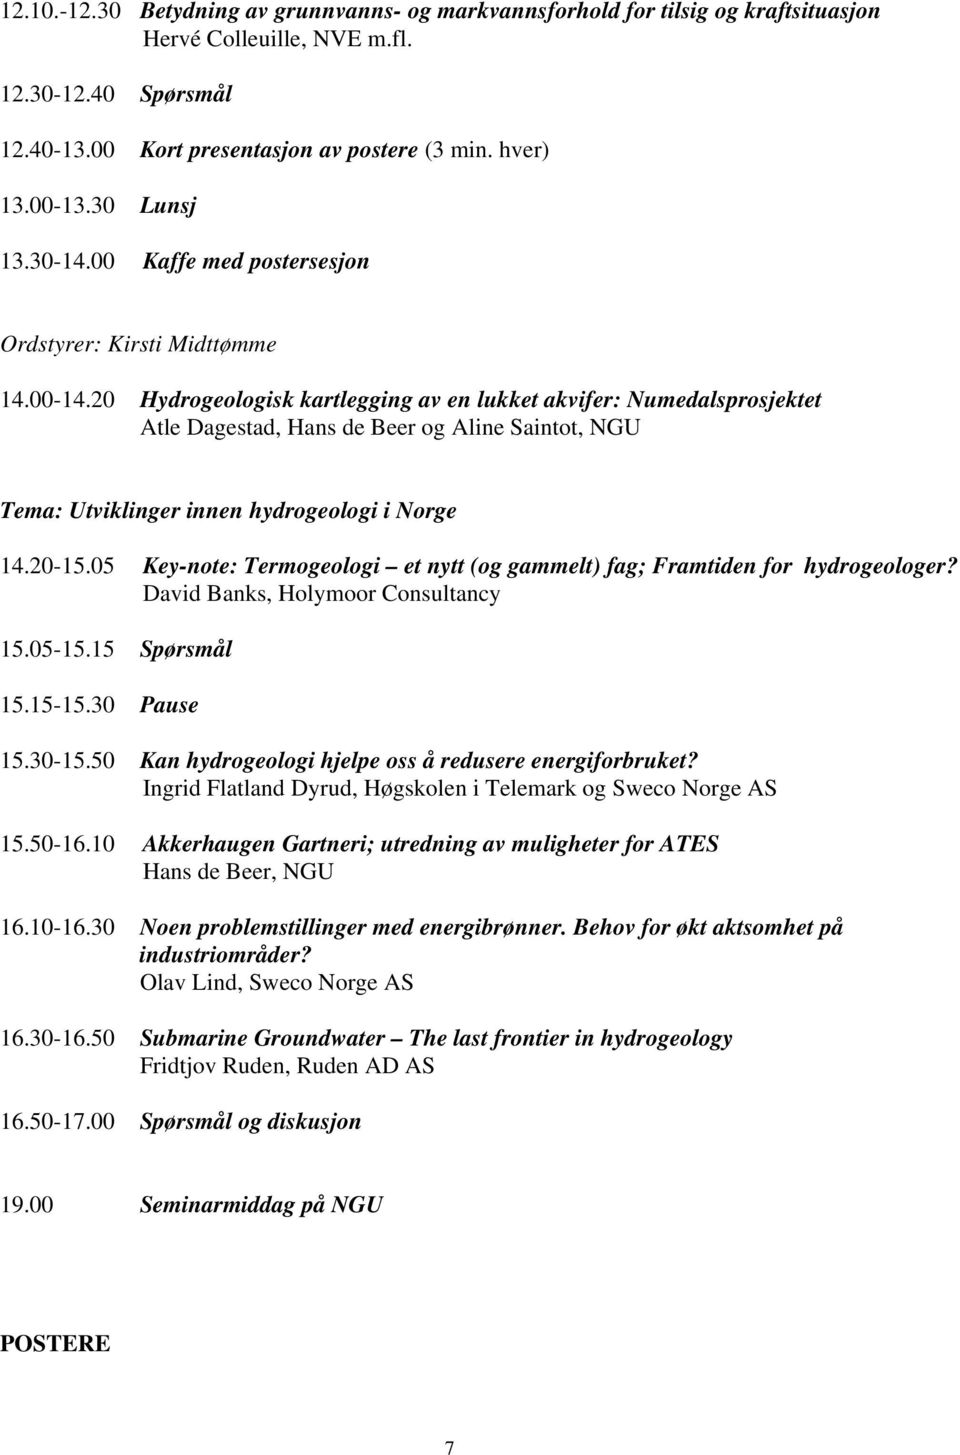 20 Hydrogeologisk kartlegging av en lukket akvifer: Numedalsprosjektet Atle Dagestad, Hans de Beer og Aline Saintot, NGU Tema: Utviklinger innen hydrogeologi i Norge 14.20-15.